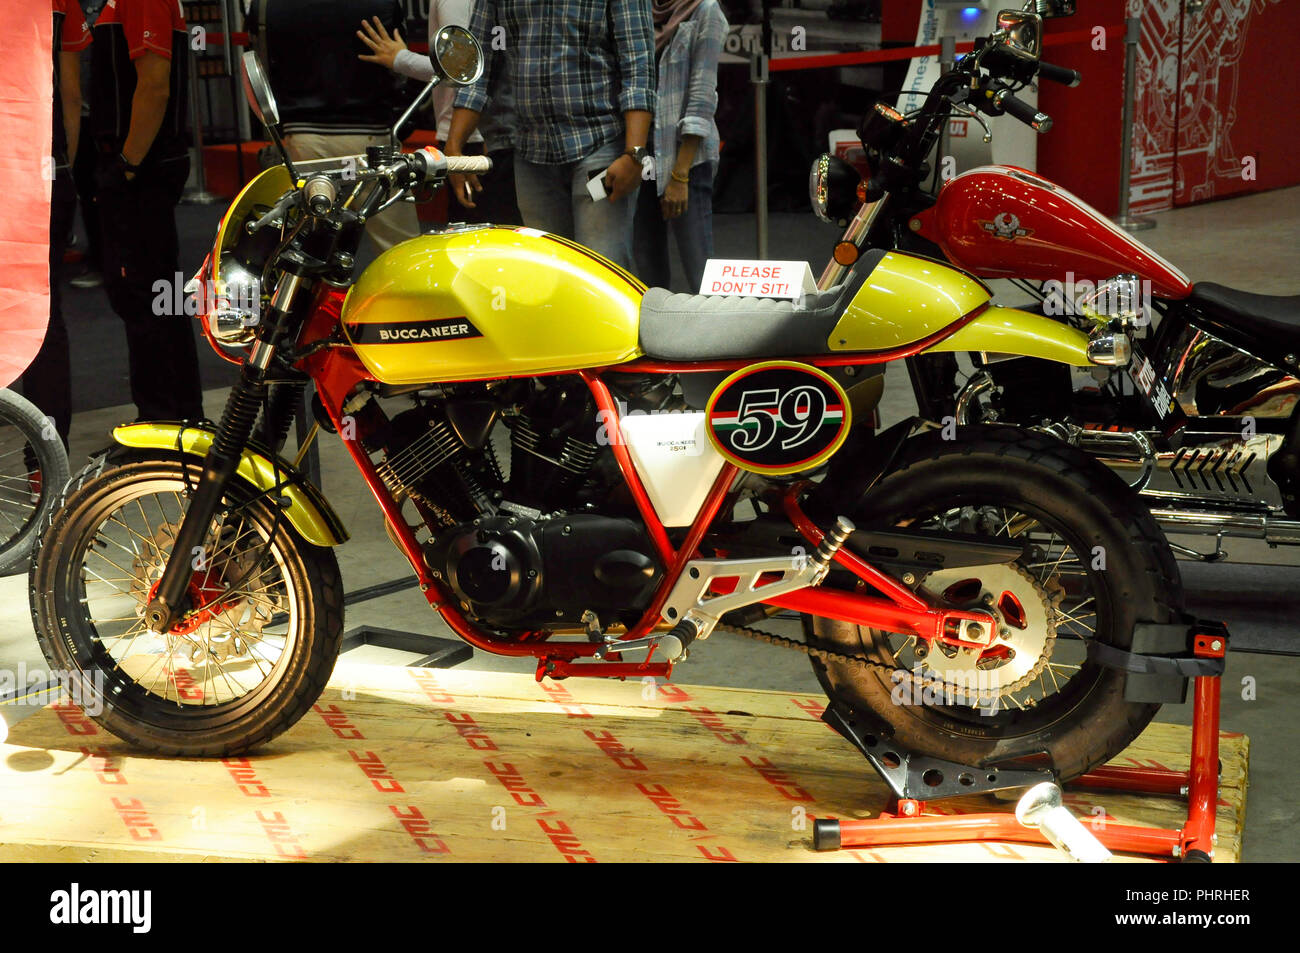 Big bike et moto custom dans d'énormes d'exposition. Affiche de foule pour la vente. Banque D'Images